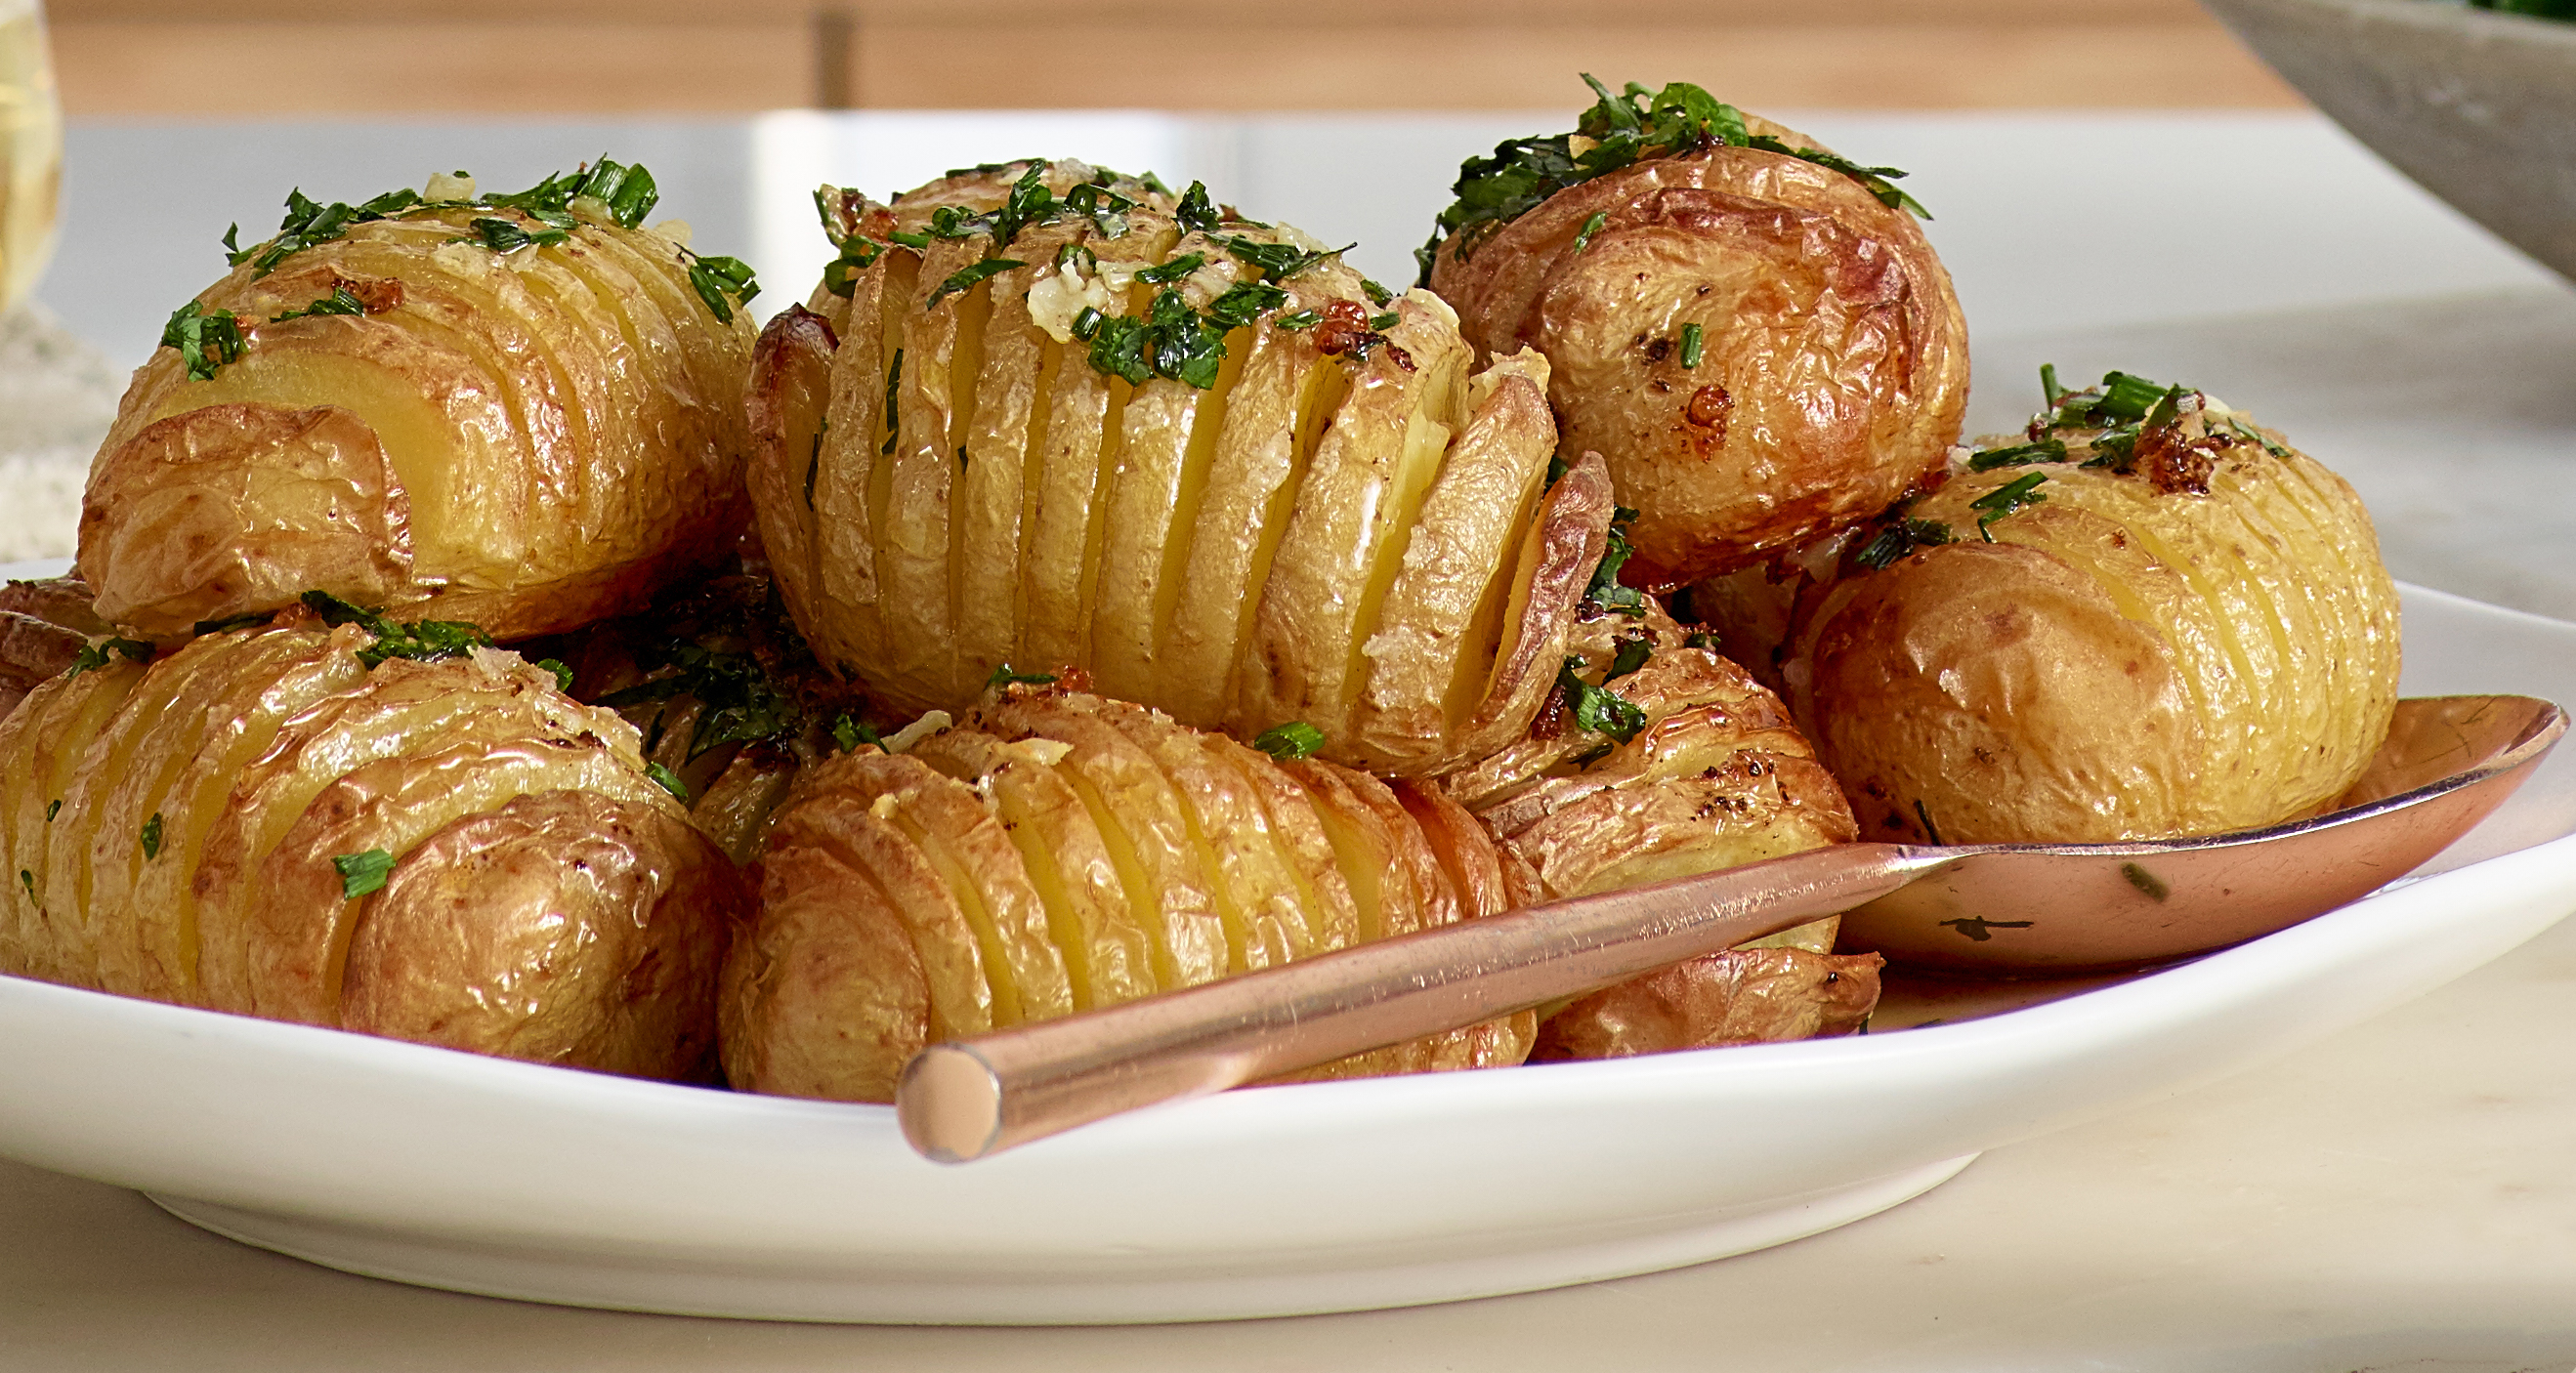 https://prod-app.breville.com/original/recipe/1667447841/Crispy+Garlic+Hasselback+Potatoes_V1.jpg